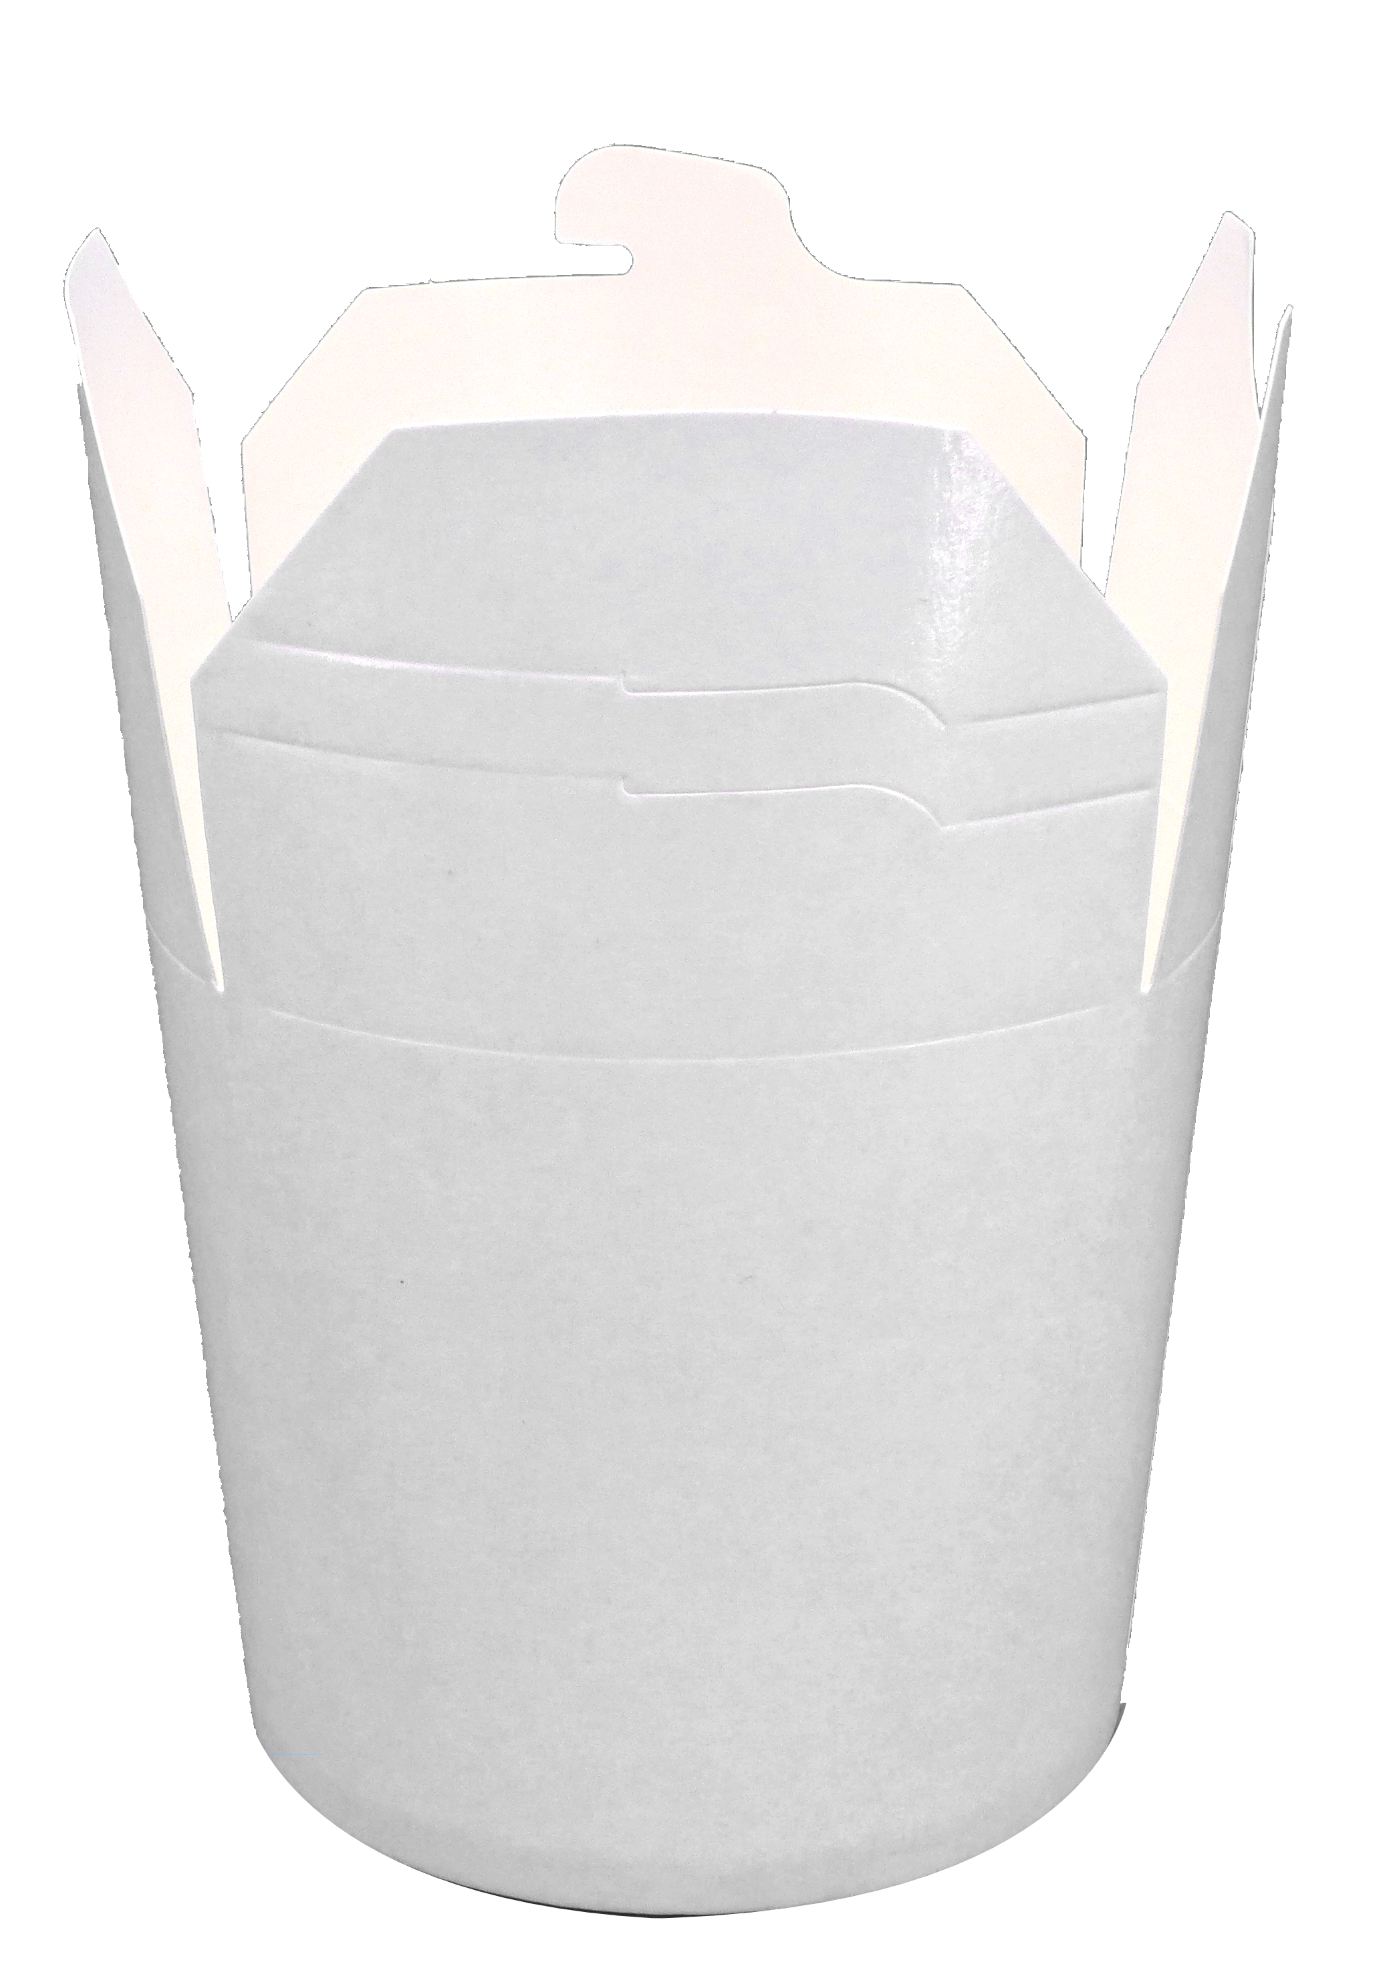 Nudelbox, weiß, rund, 16 oz, 500 ml